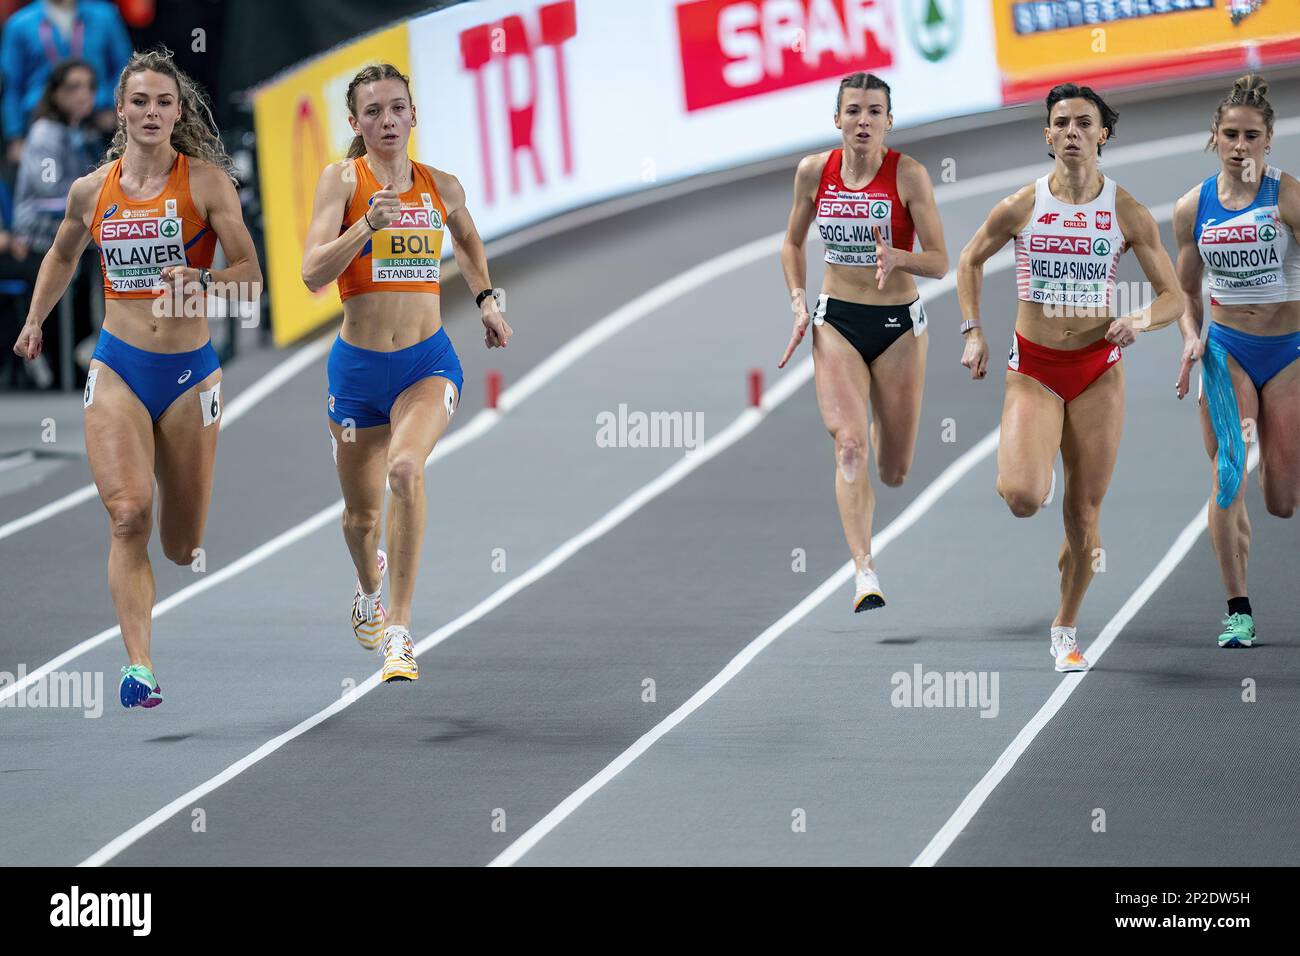 ISTANBUL - Femke bol et Lieke Klaver en action lors de la finale de 400 mètres le troisième jour des Championnats européens d'athlétisme en salle en Turquie. ANP RONALD HOOGENDOORN Banque D'Images